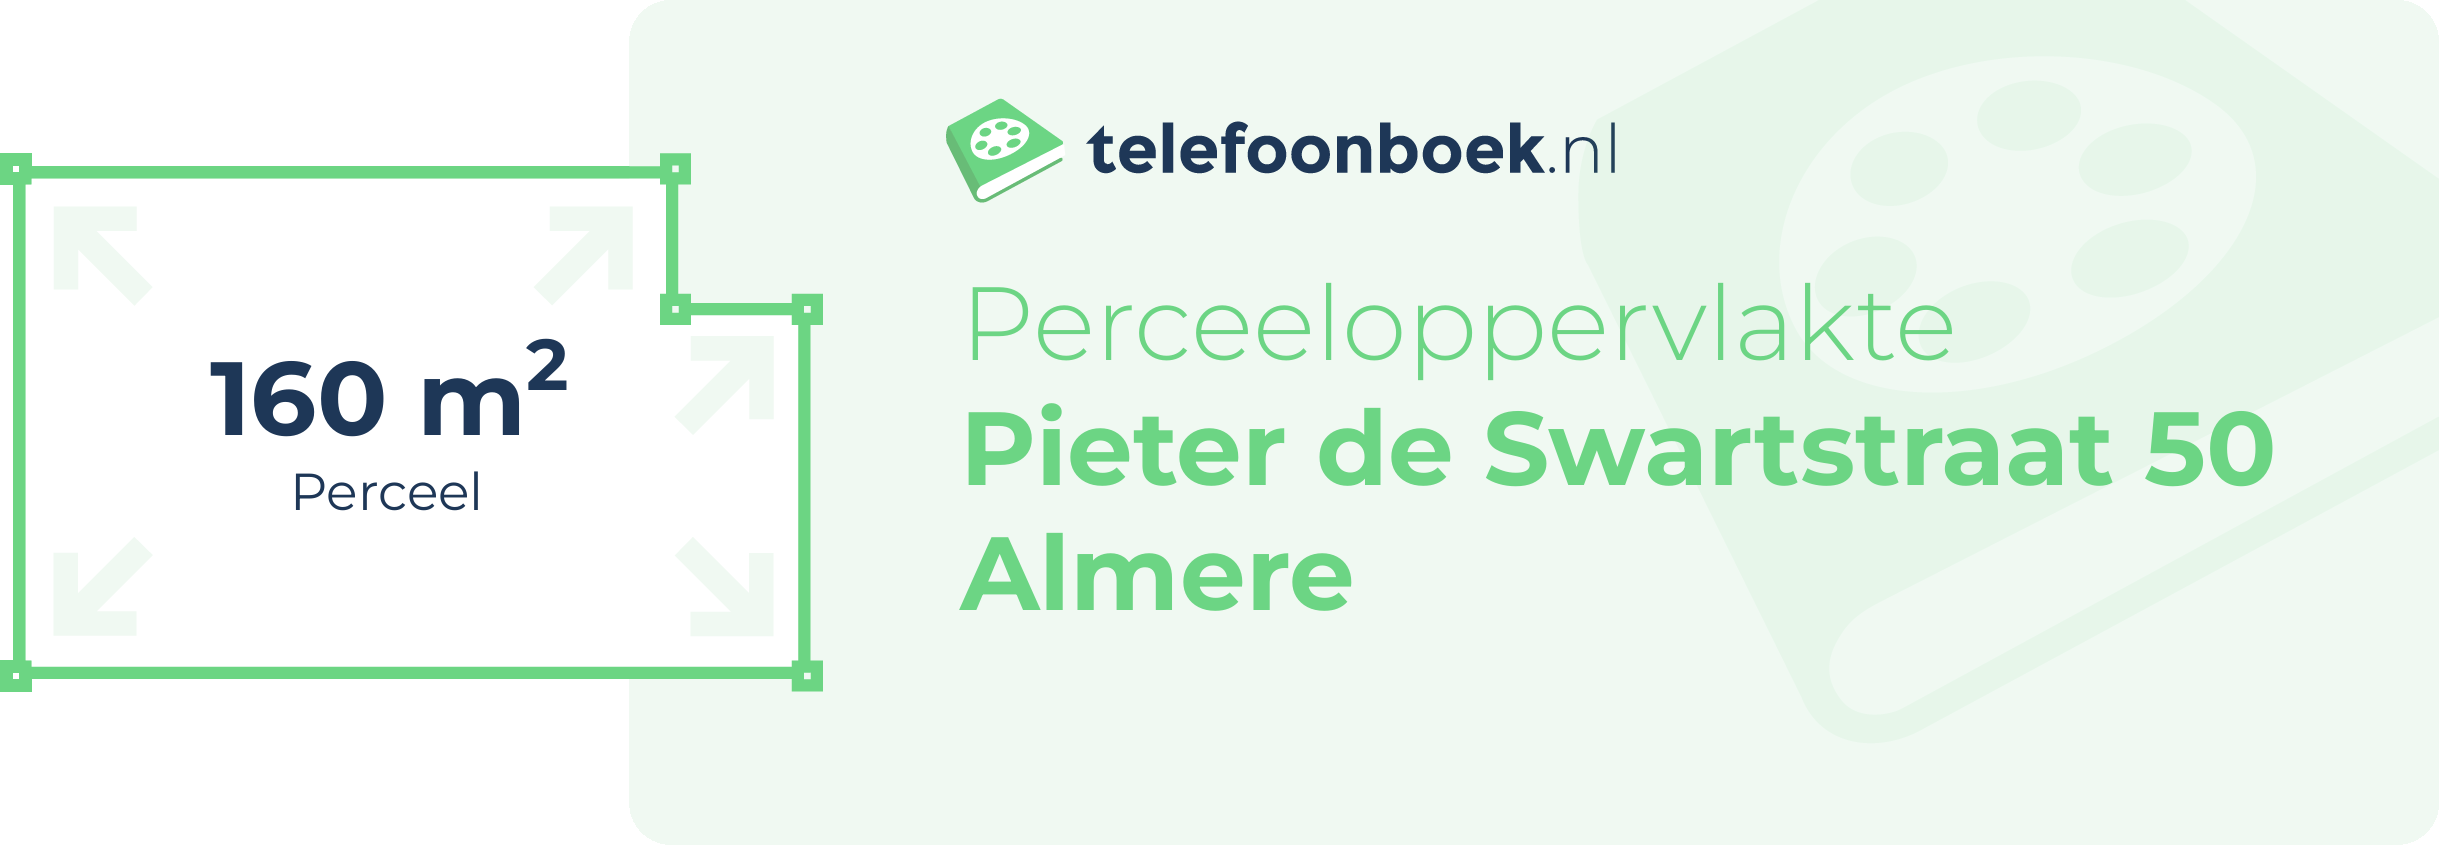 Perceeloppervlakte Pieter De Swartstraat 50 Almere